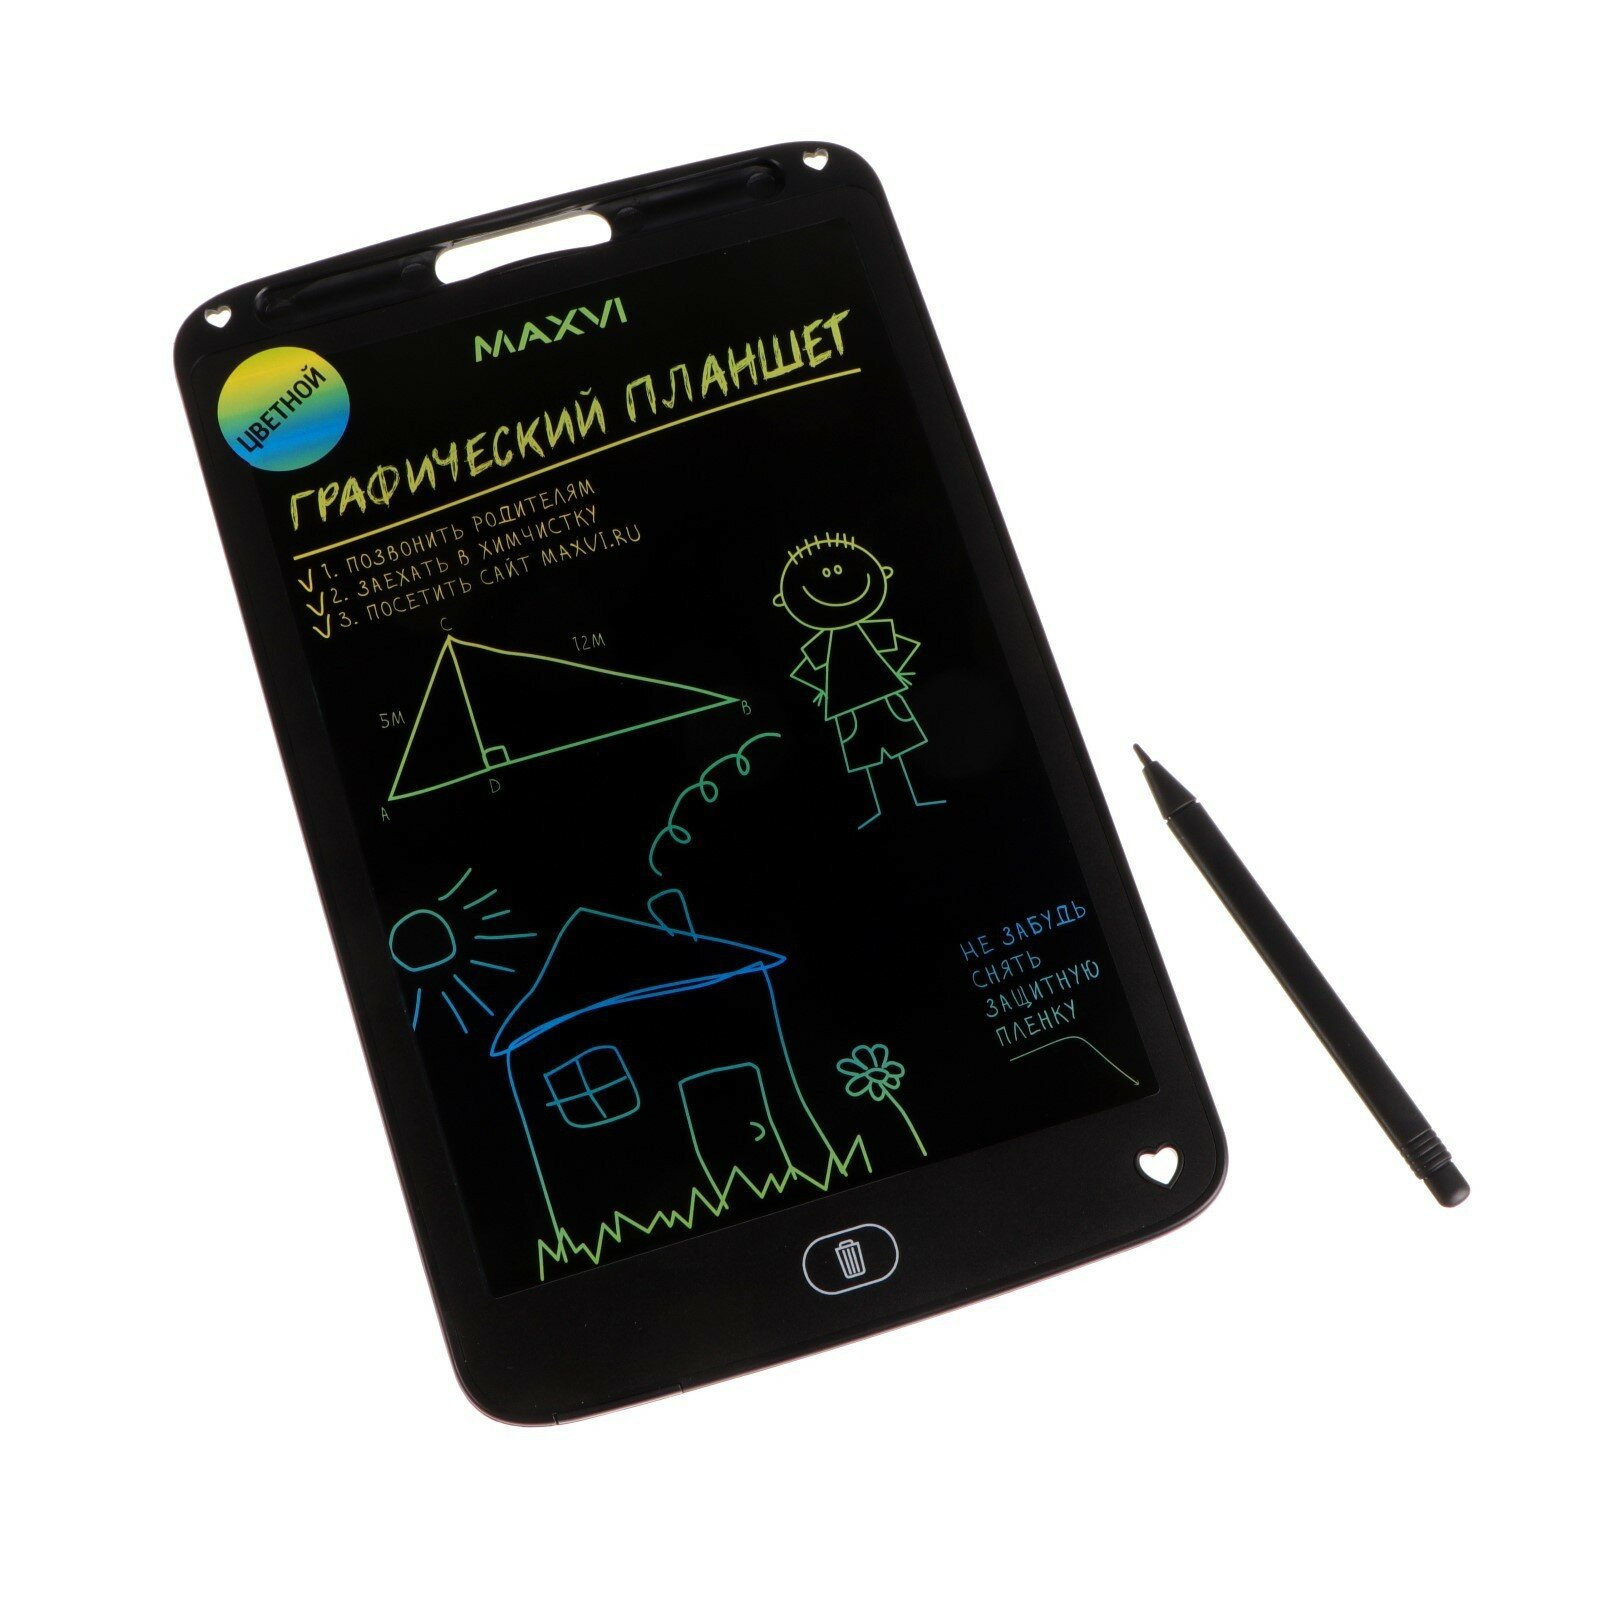 Графический планшет для рисования и заметок LCD Maxvi MGT-02С 10.5” цветной дисплей черный